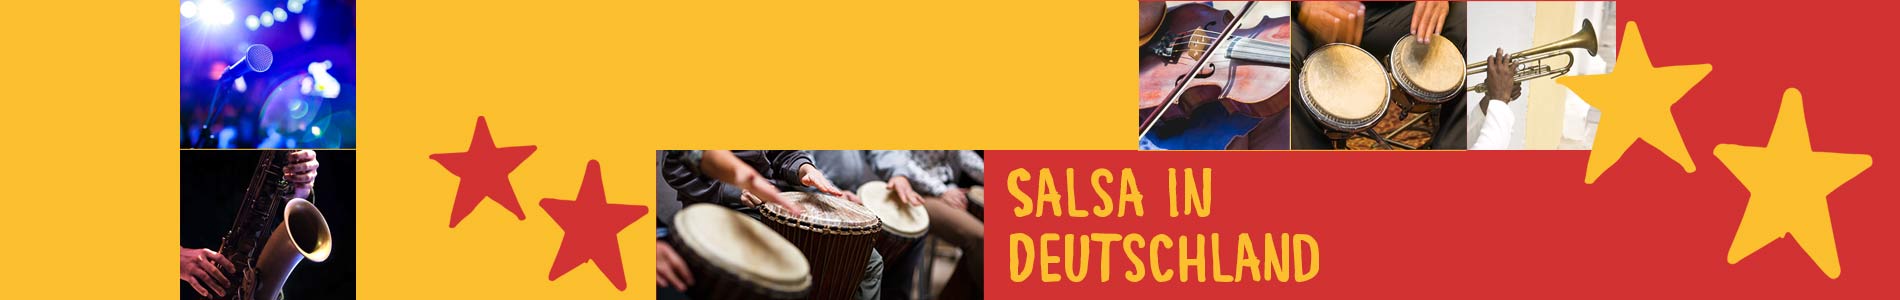 Salsa in Bufleben – Salsa lernen und tanzen, Tanzkurse, Partys, Veranstaltungen